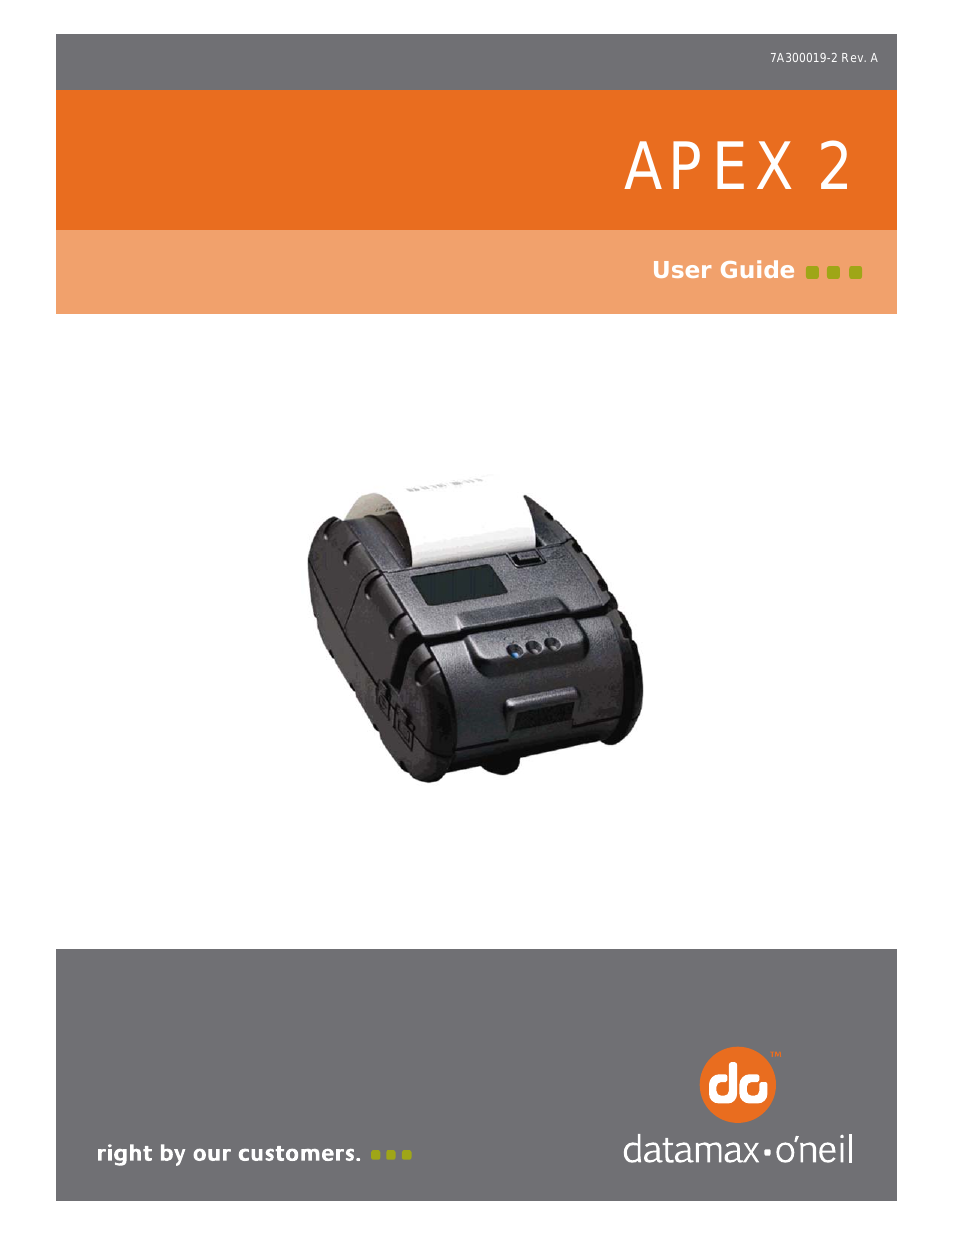 APEX 2 User Guide